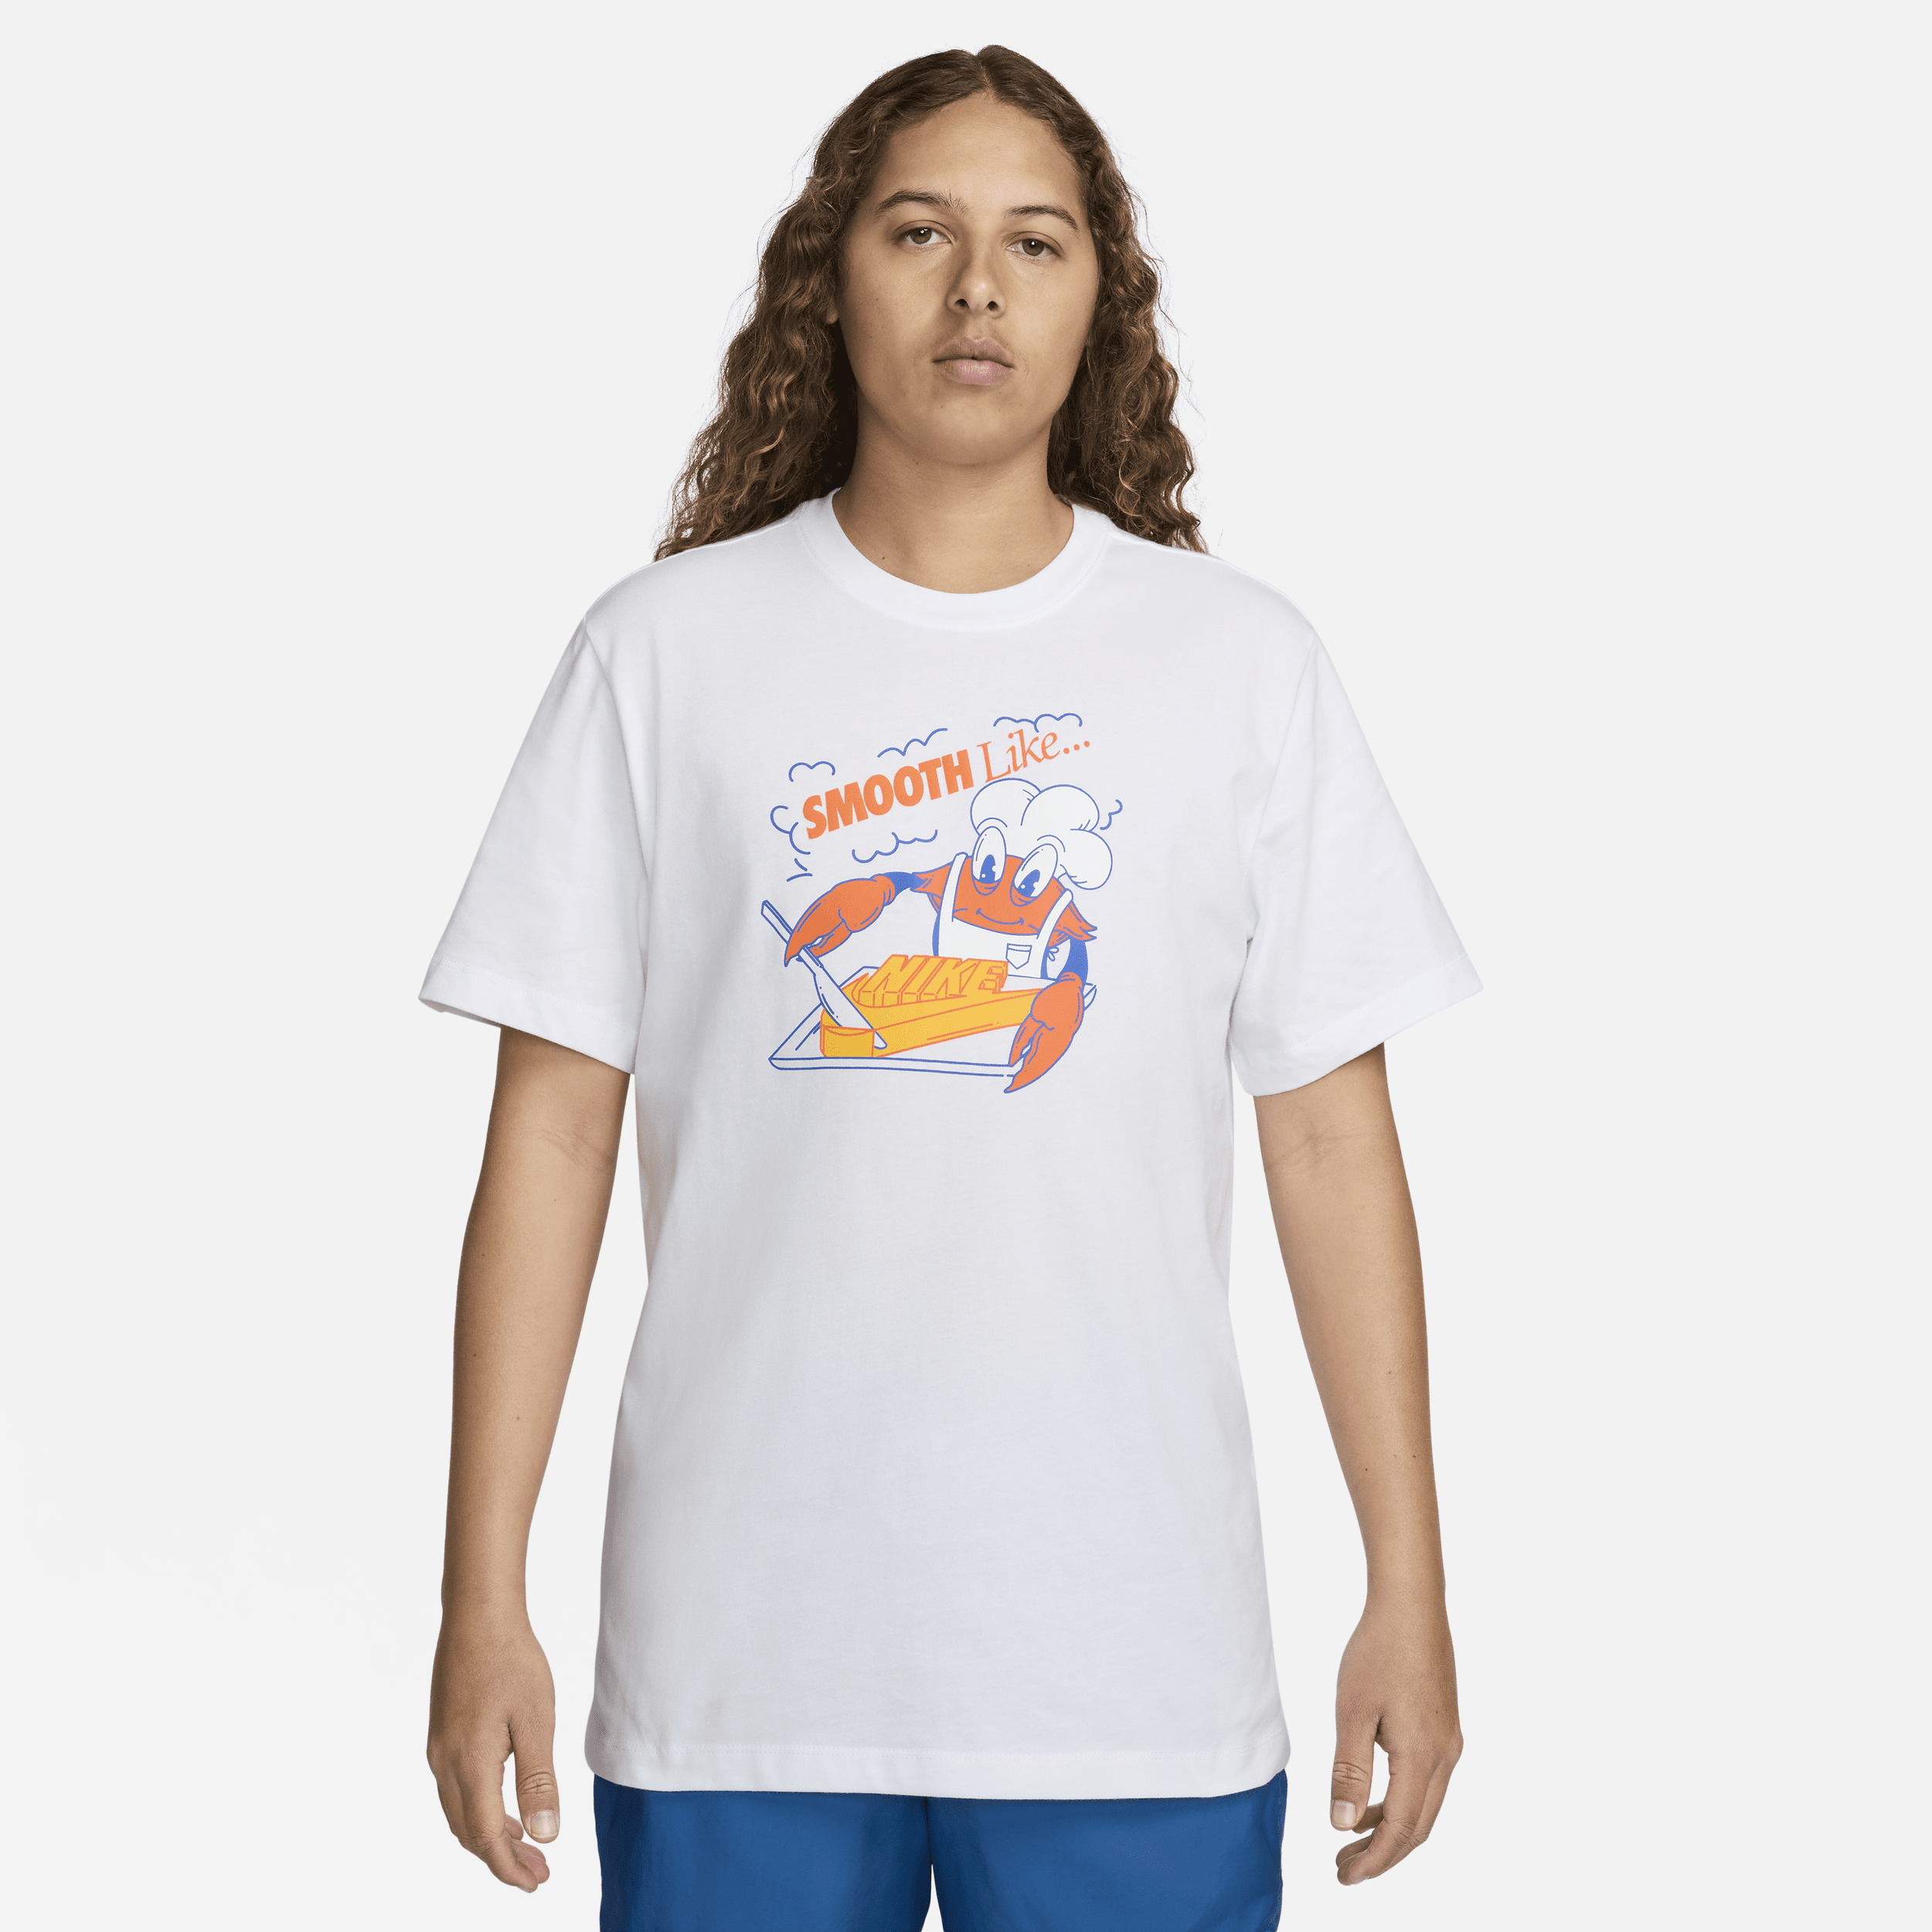 Nike Sportswear-T-shirt til mænd - hvid